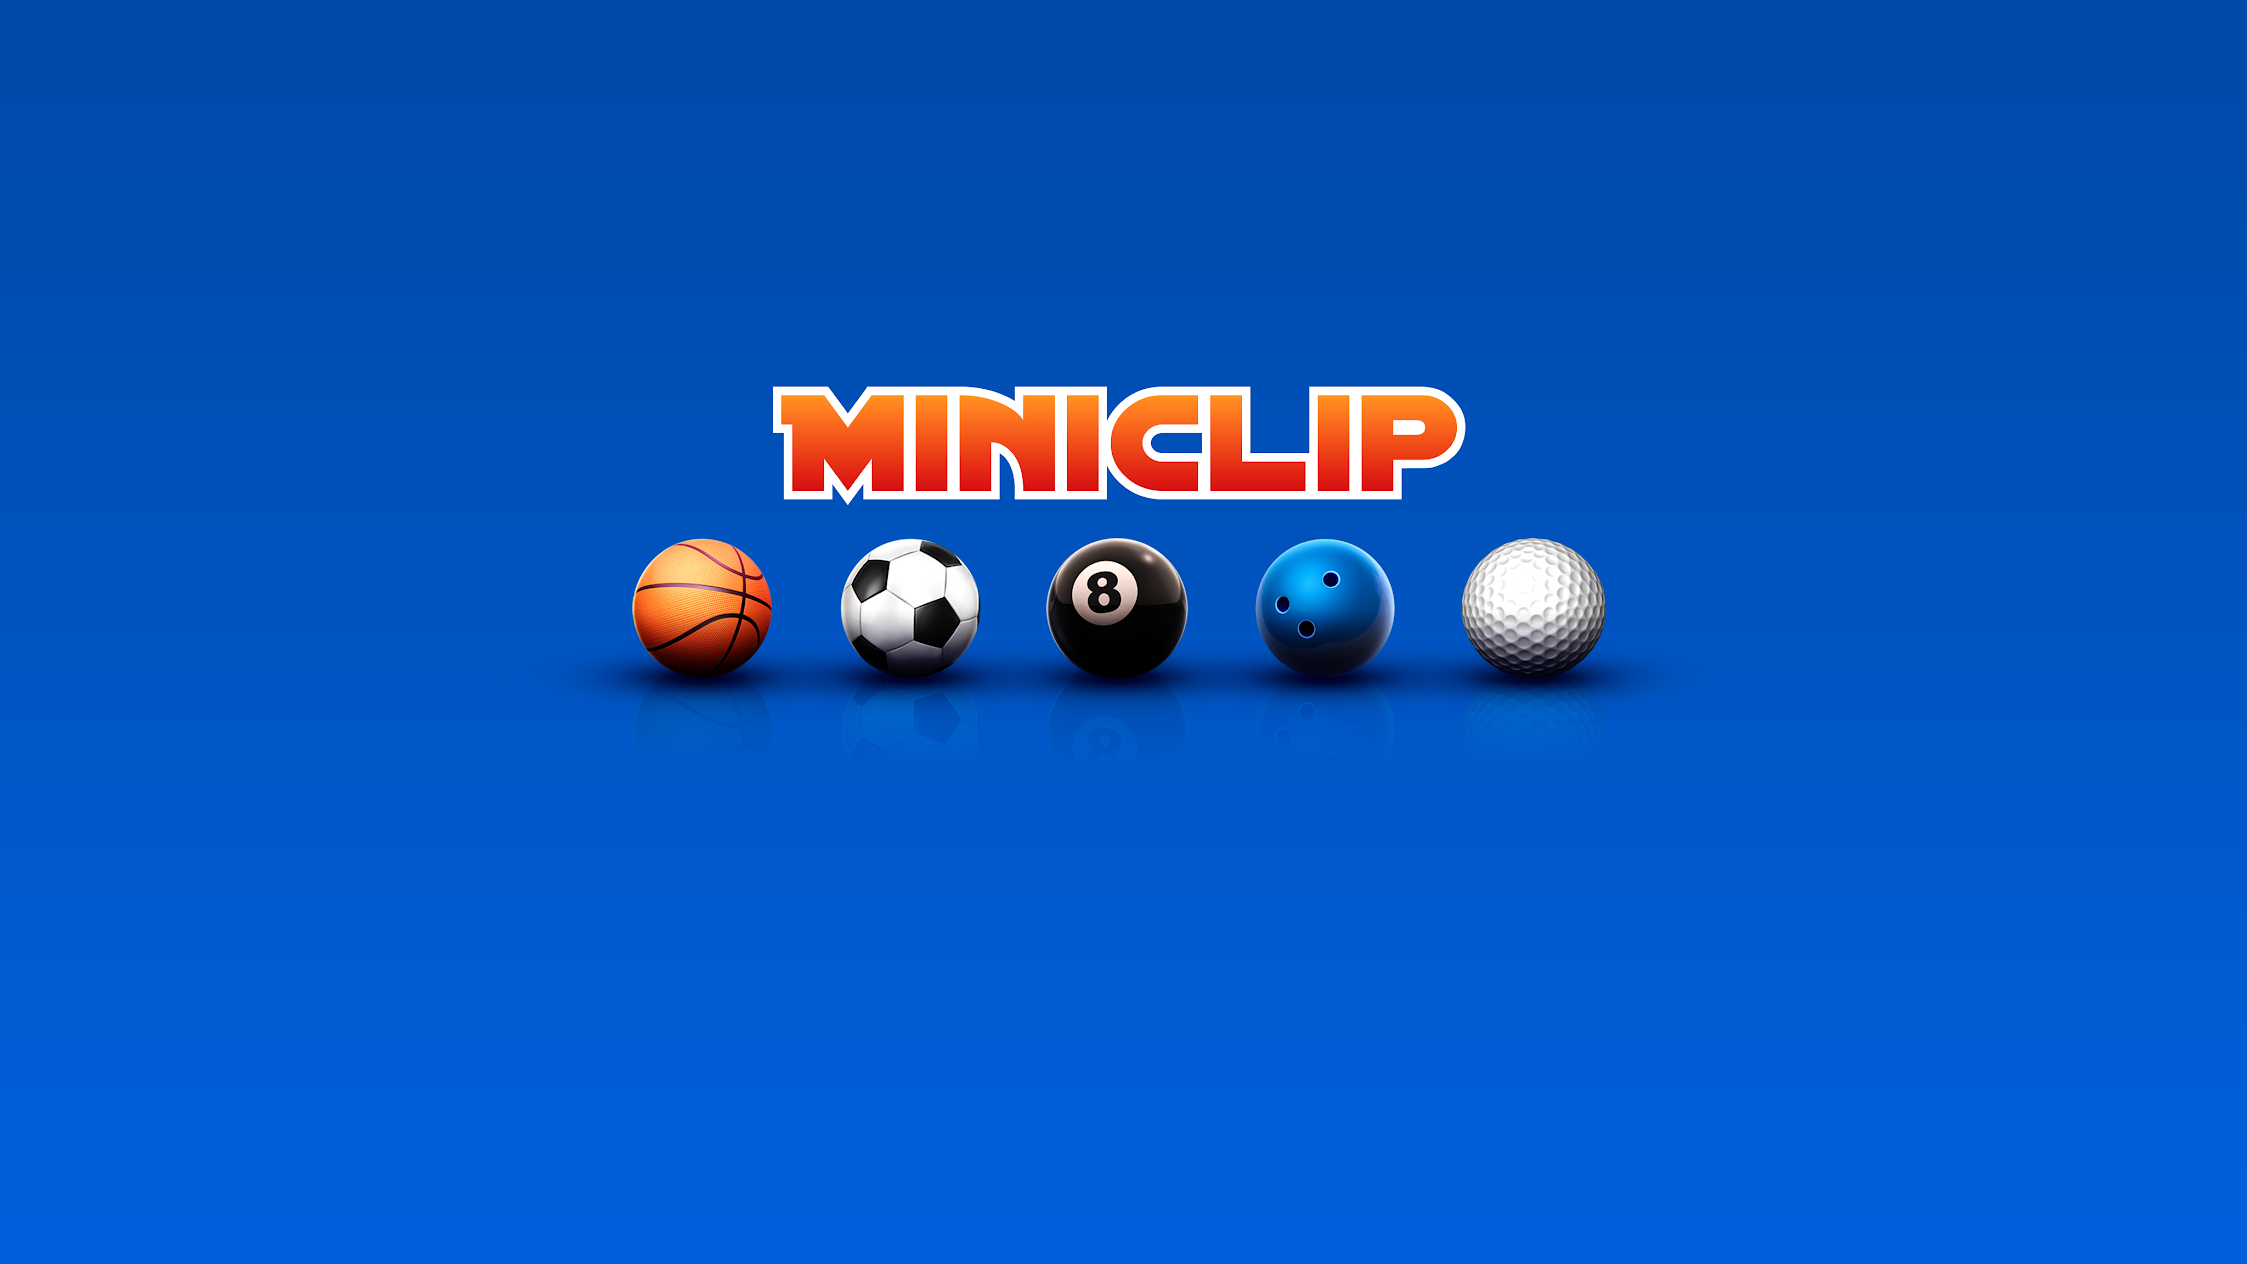 Miniclip.com